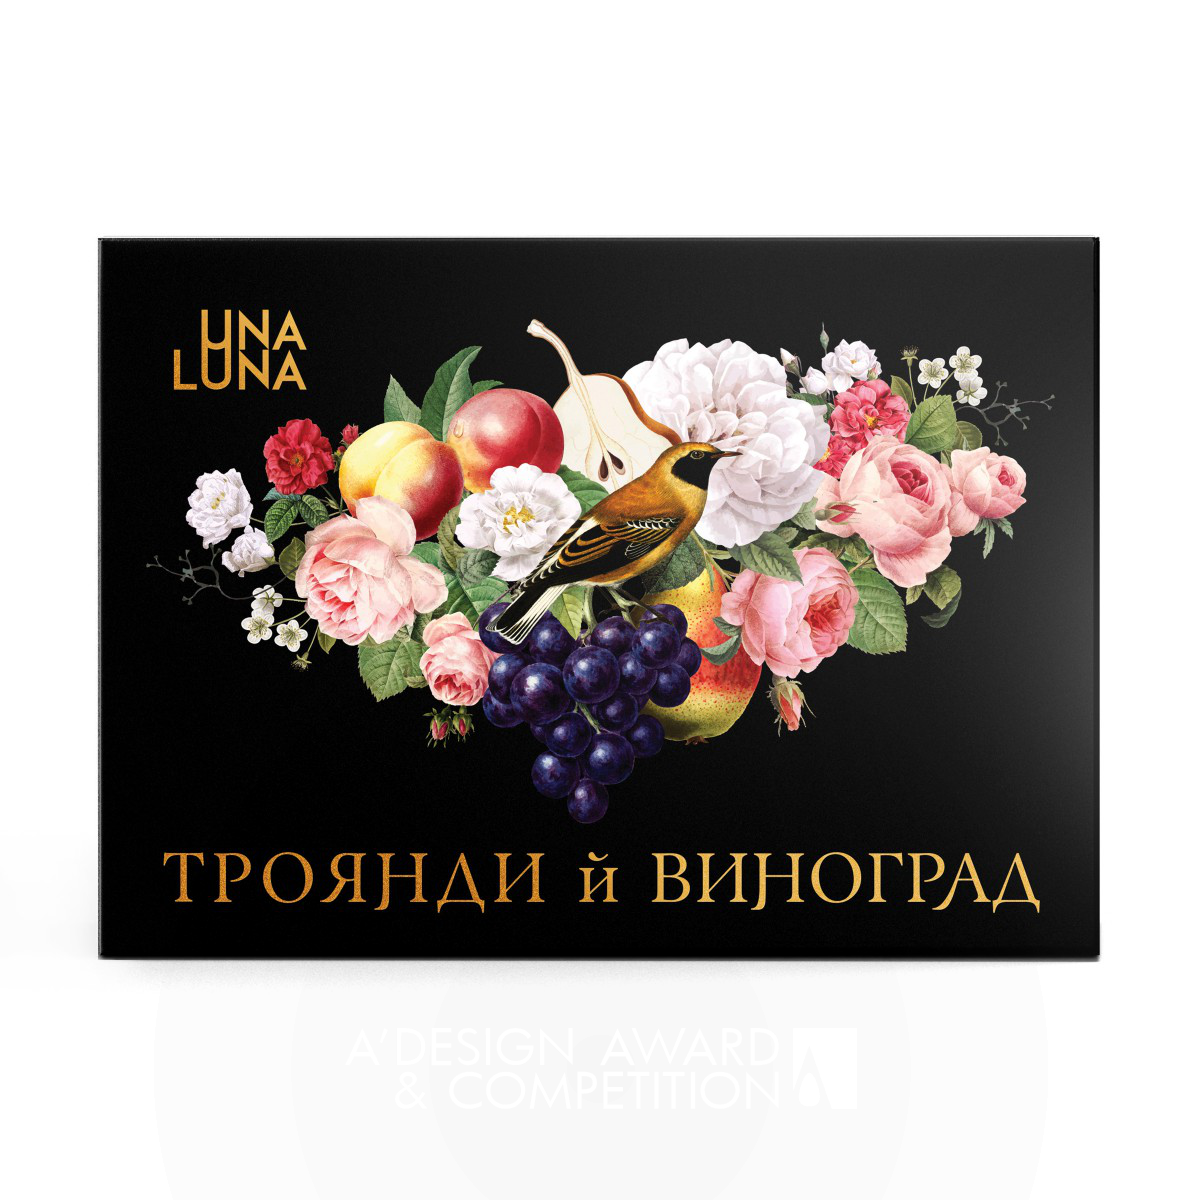 Una Luna: Eine einzigartige Verpackung für Premium-Fruchtbonbons